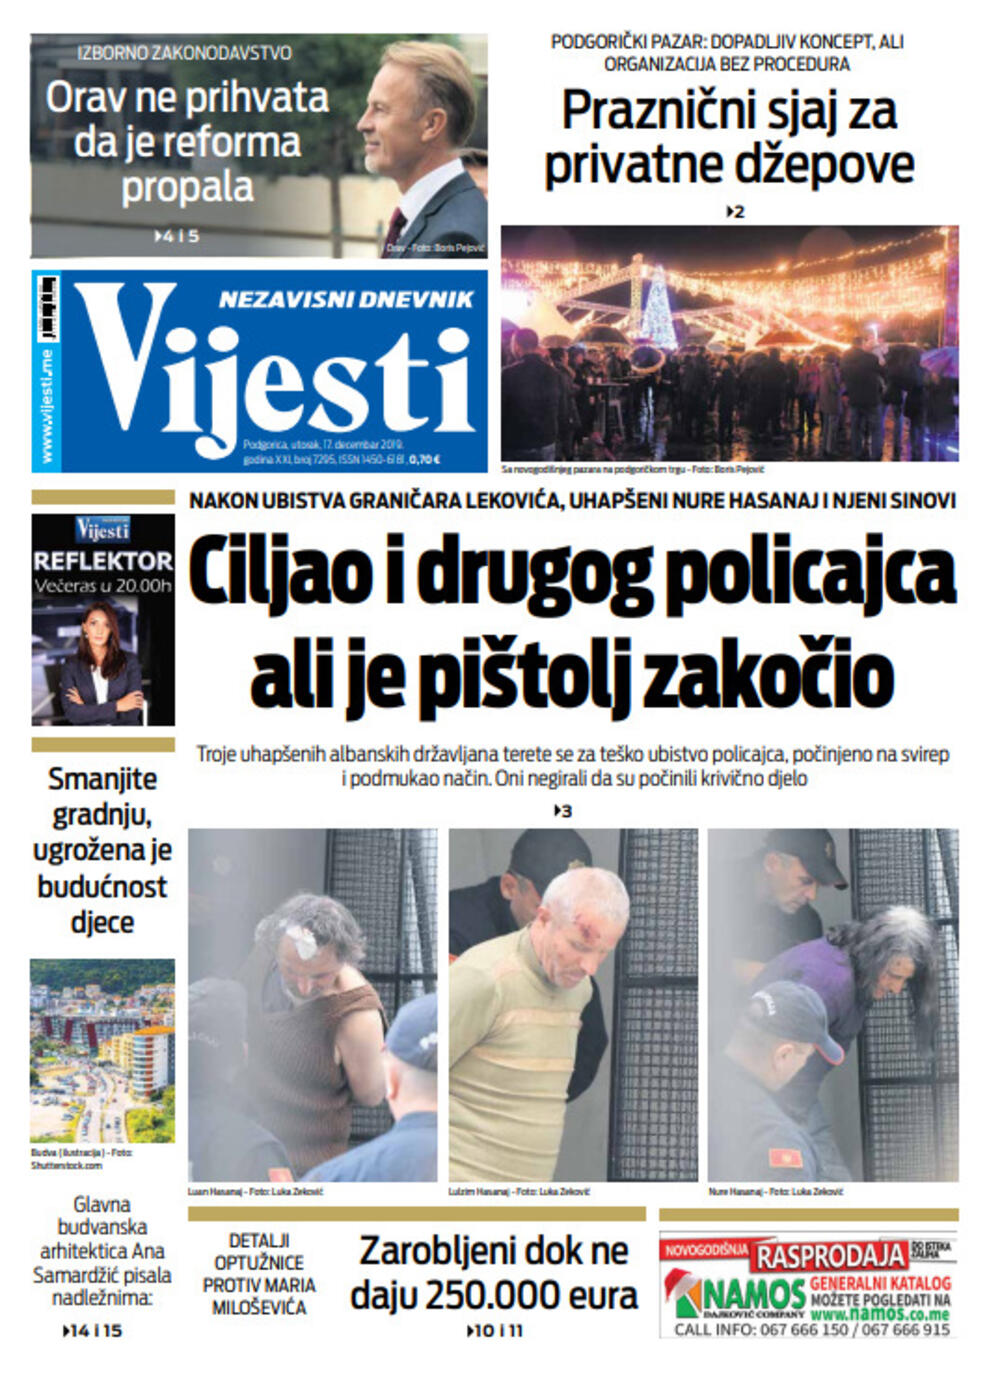 Naslovna strana "Vijesti" za 17. decembar 2019., Foto: Vijesti